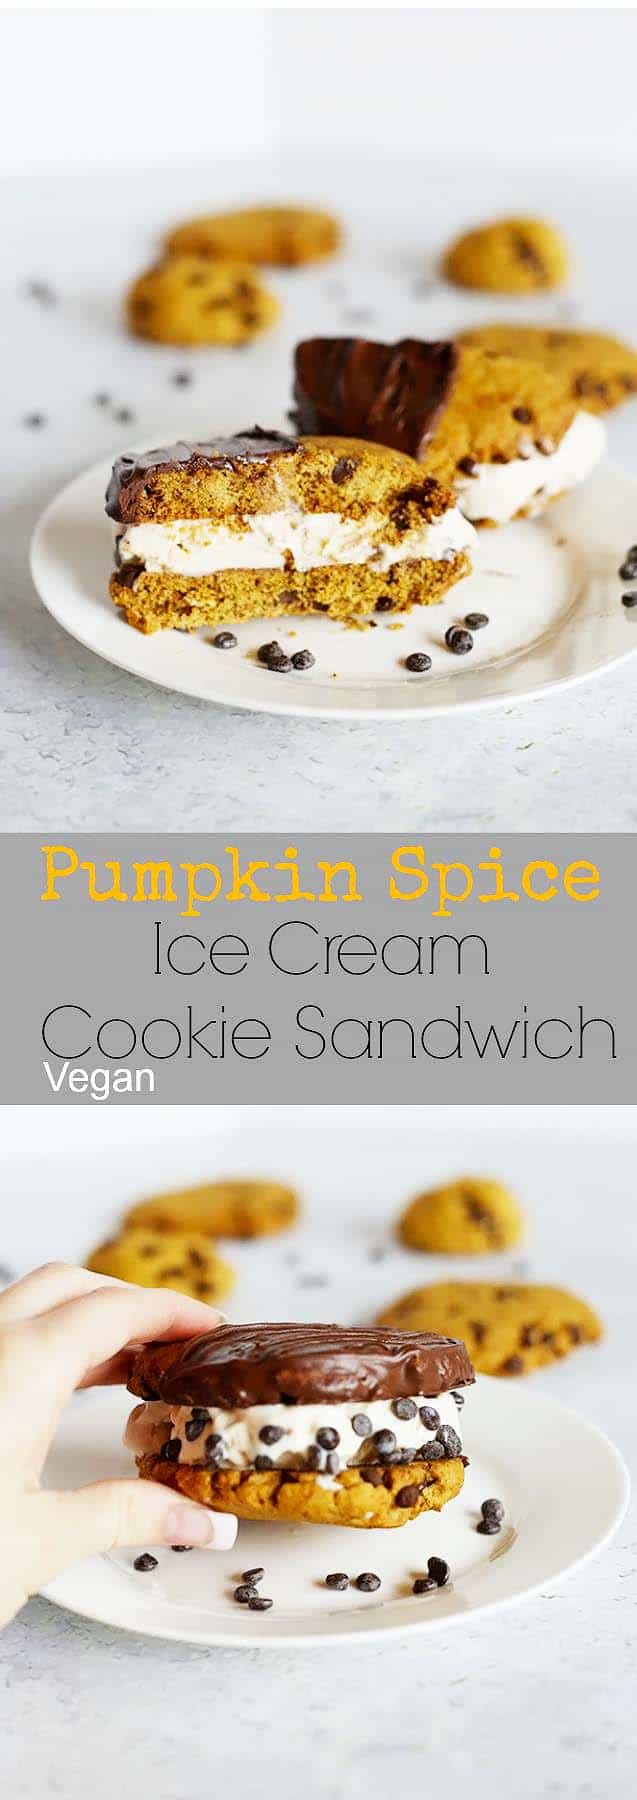 Pumpkin Spice Ice Cream Cookie Sandwich